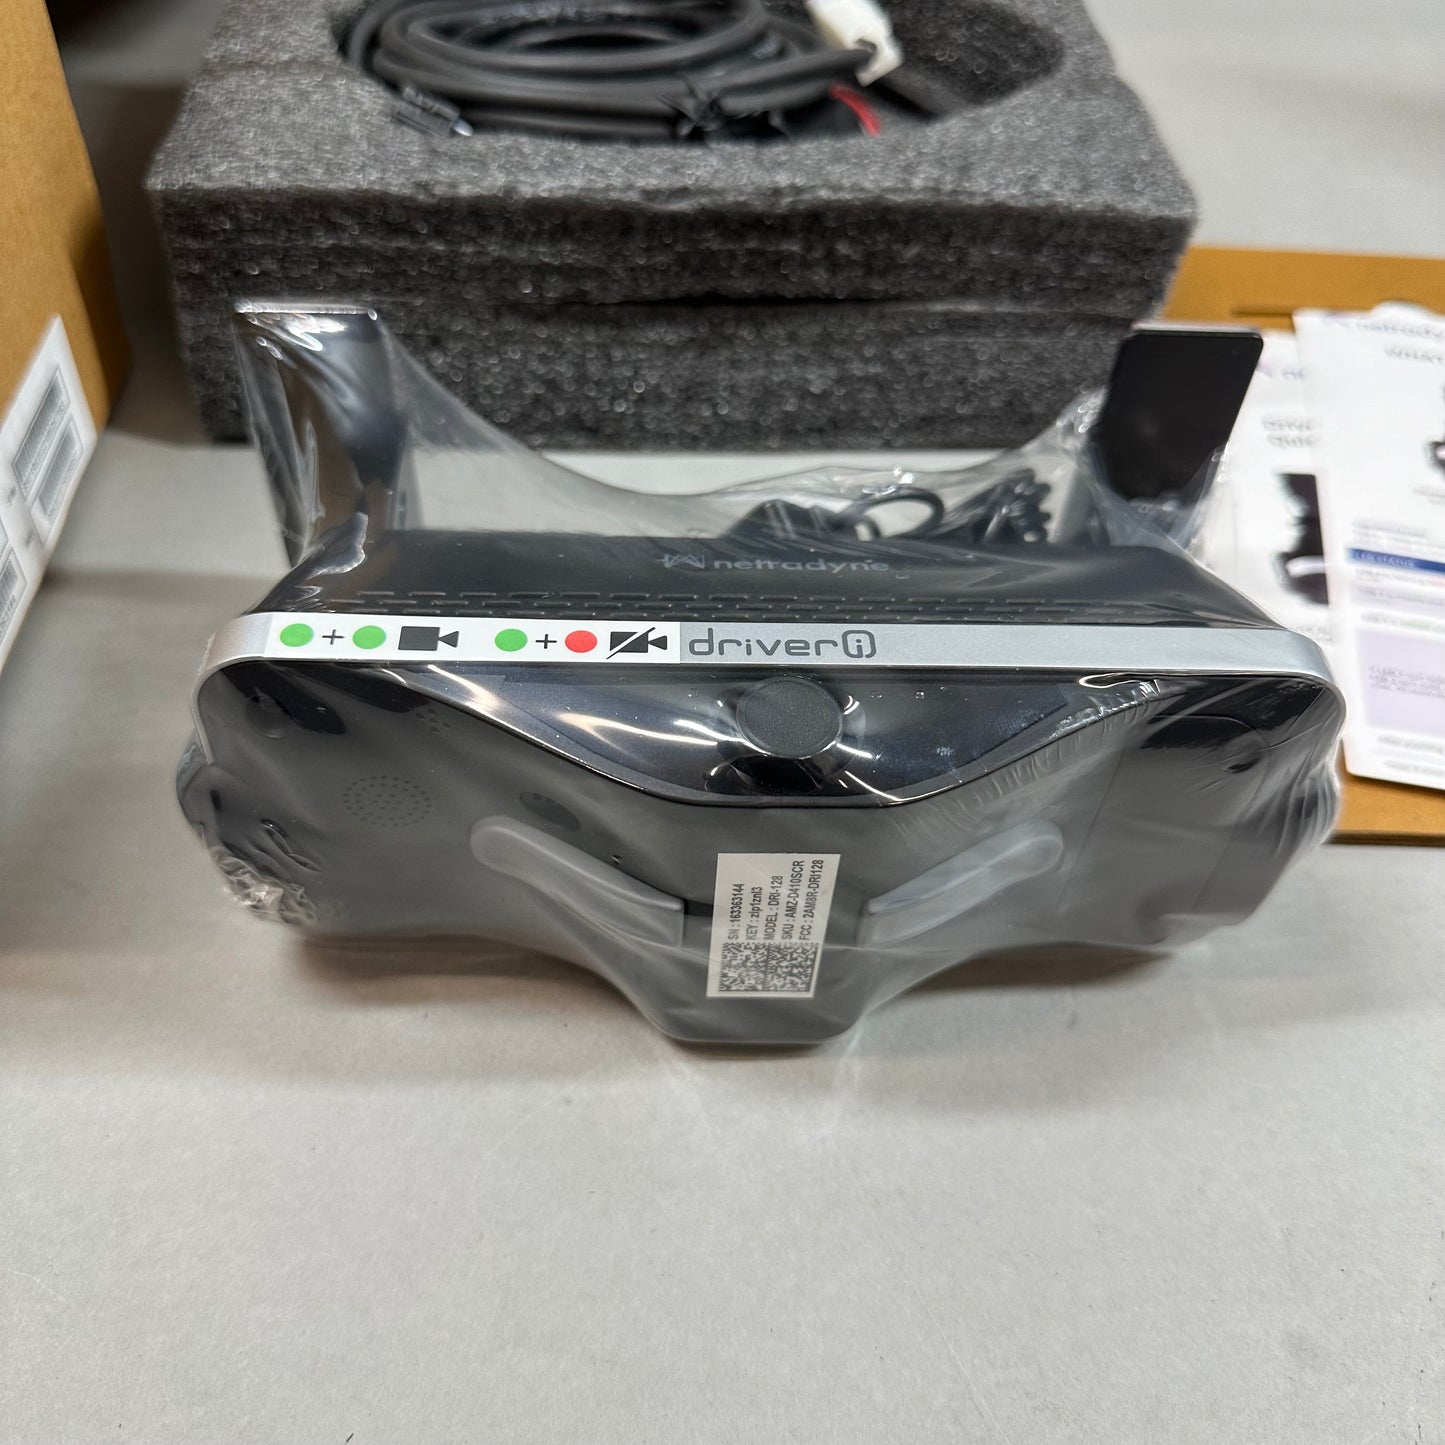 New Netradyne Dash Camera Driver-i 2AM8R-DRI128 ALM-R AMZ-D410SCR